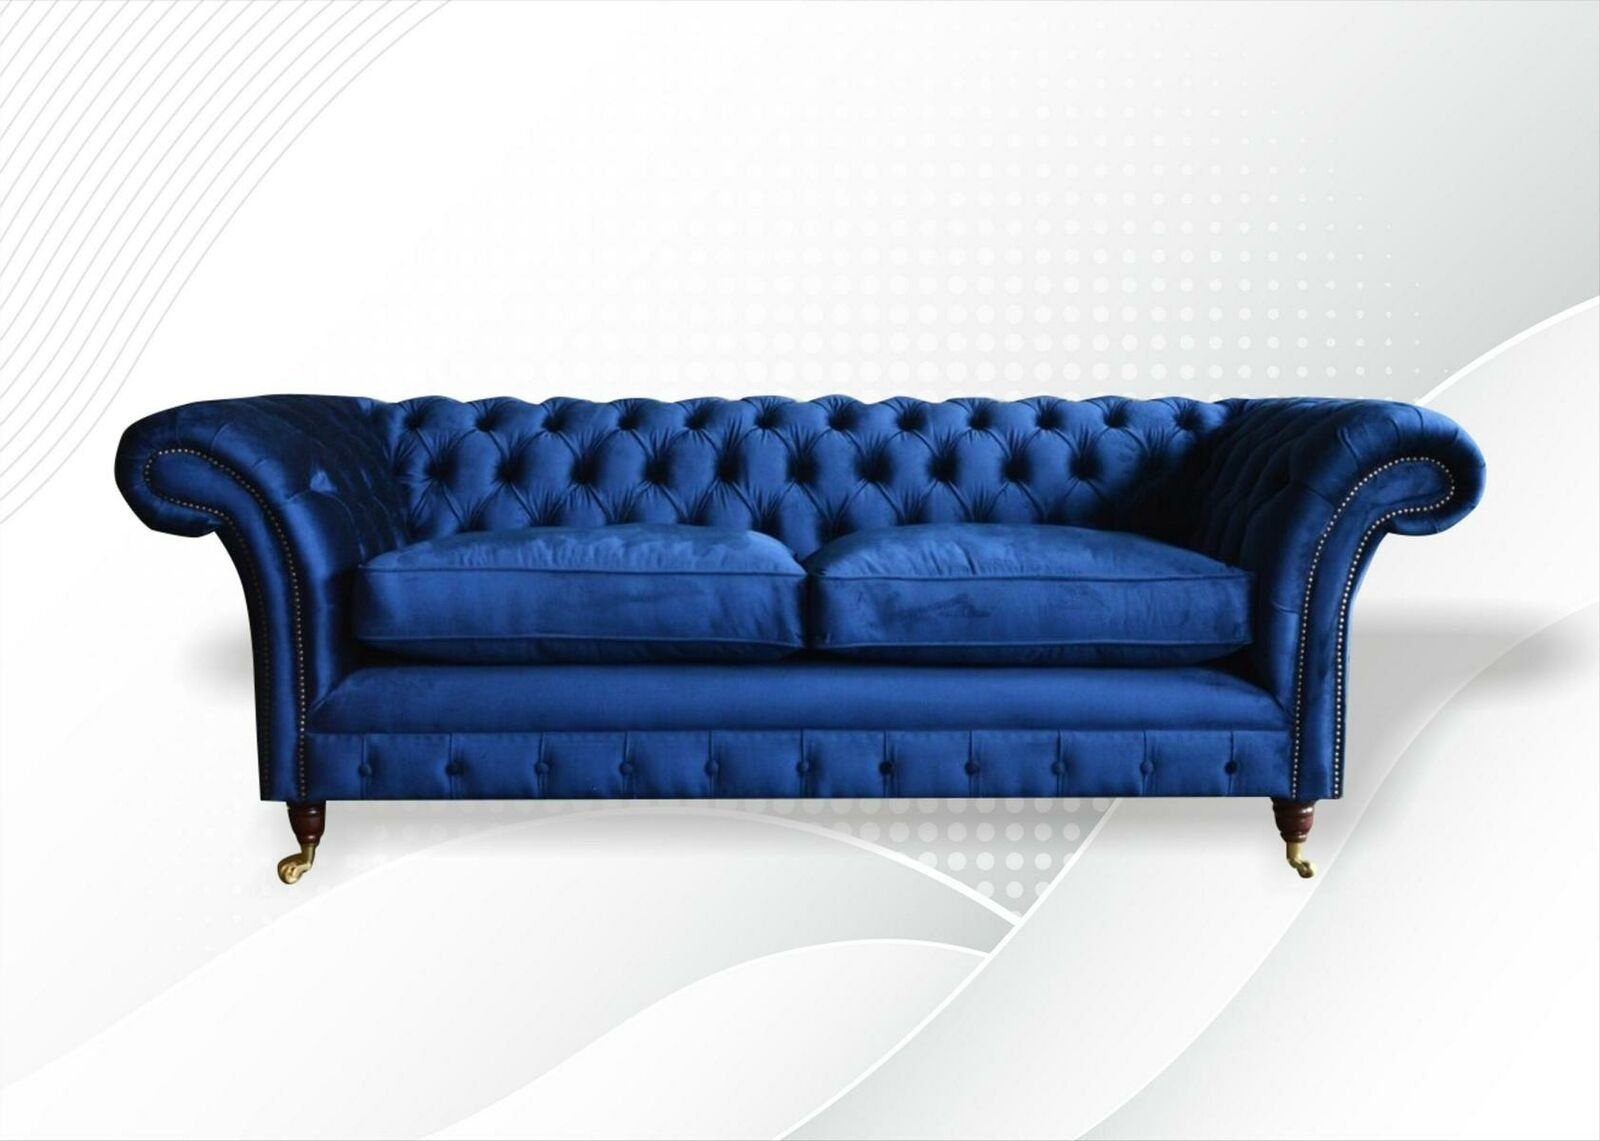 JVmoebel Chesterfield-Sofa Blauer Chesterfield 3-Sitzer luxus Möbel Wohnzimmer Design Neu, Made in Europe